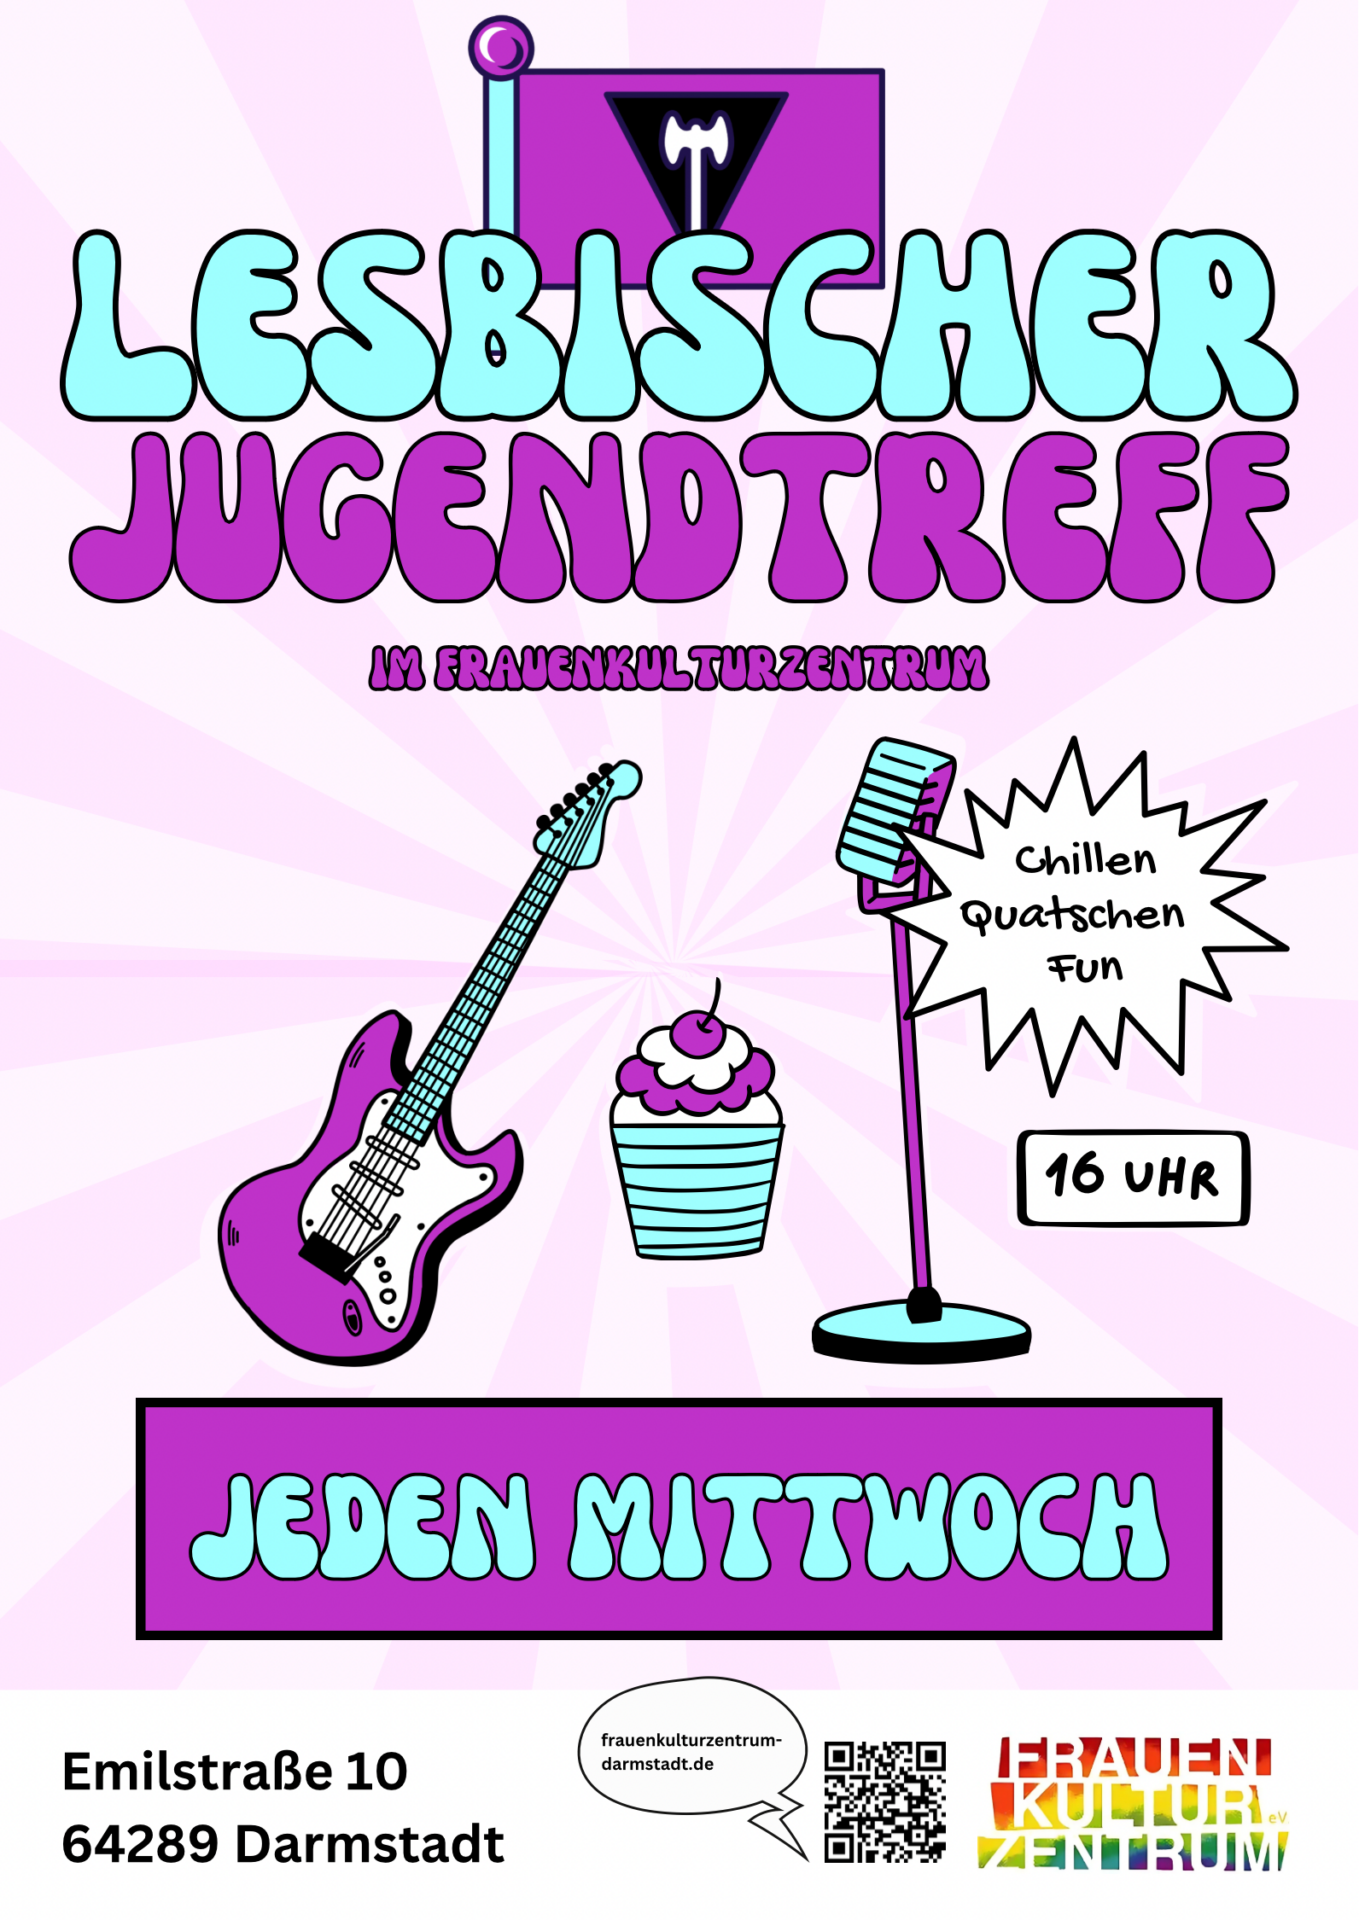 Einladung zum lesbischen Jugendtreff. In poppigen Farben sind abgebildet eine E-Gitarre, ein Mikrofon und ein Cupcake.